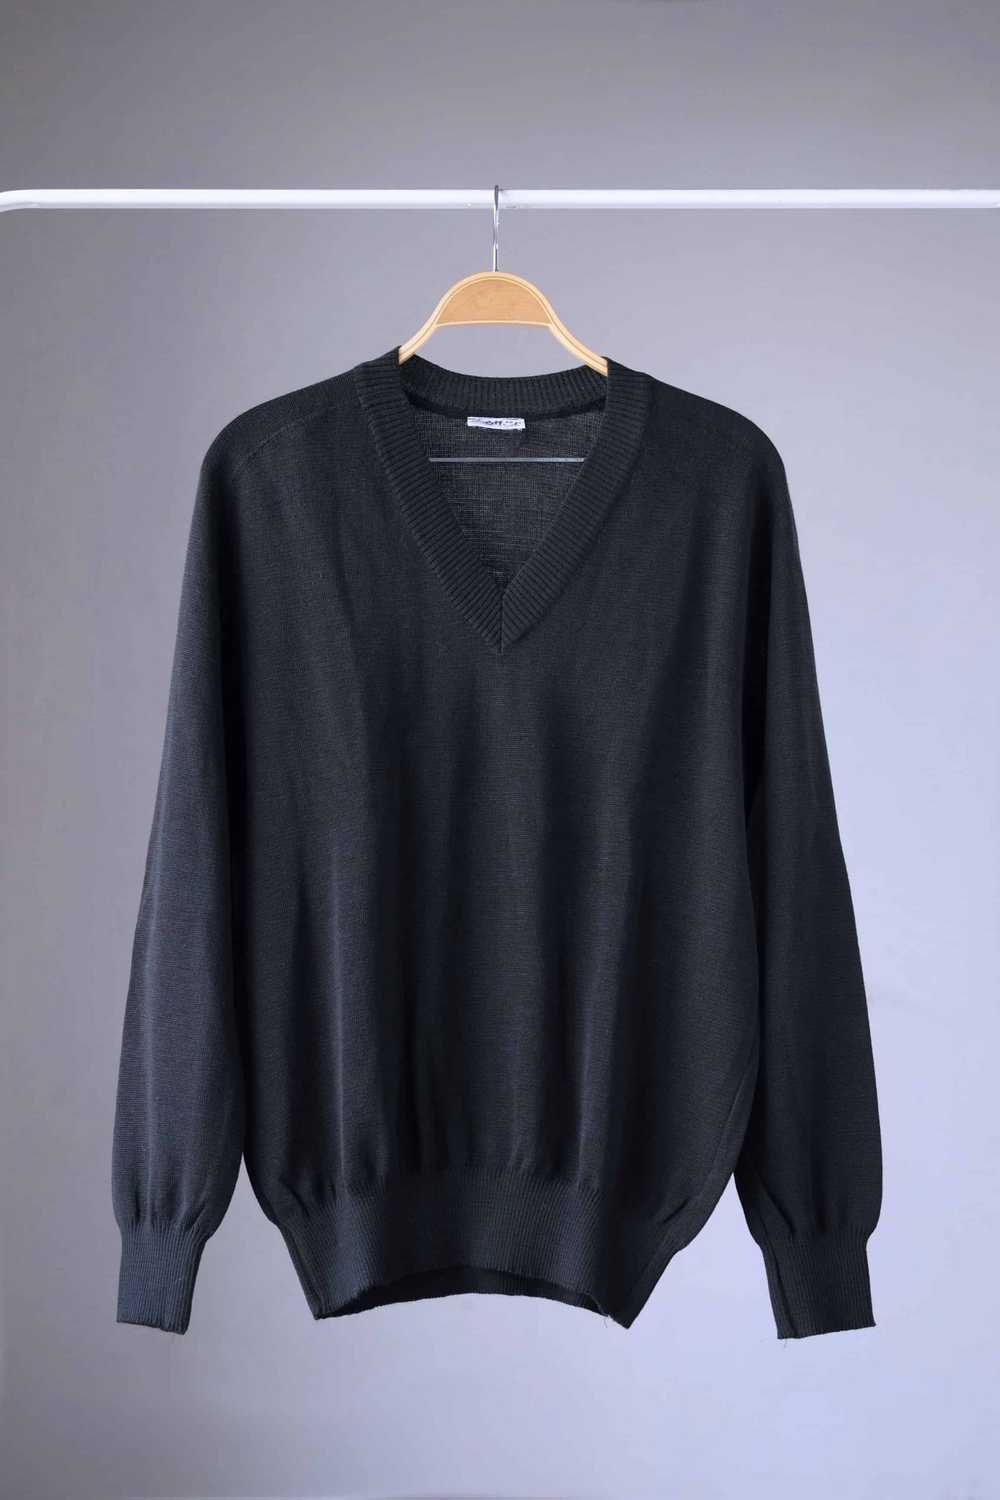 LÖFFLER 80's Solid Black V-Neck Sweater - image 1